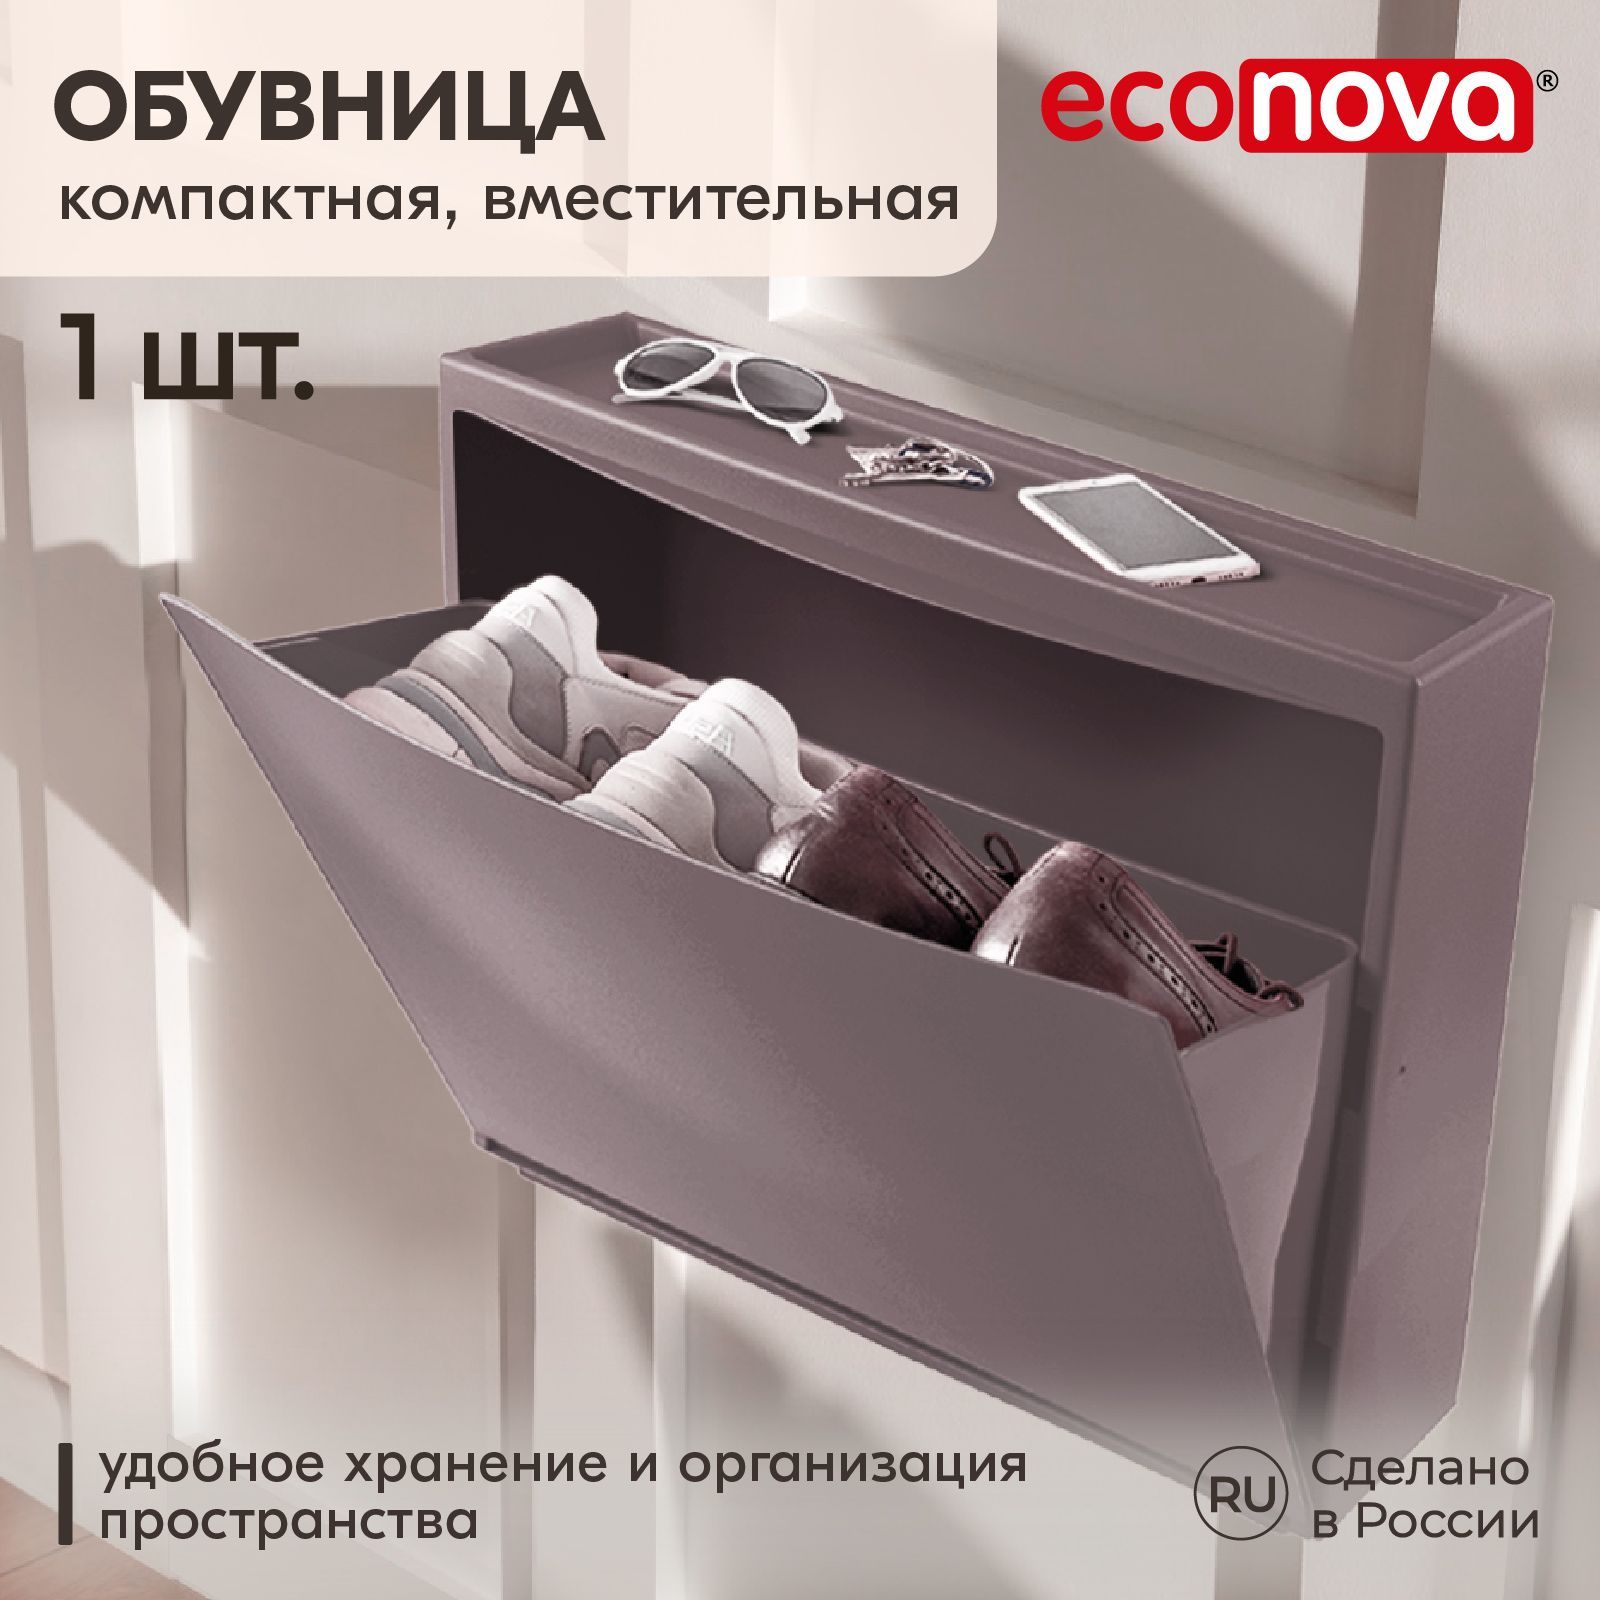 Обувница Econova 512х185х380 мм, Полипропилен, 18.5x51.2x38 см - купить по выгодной цене в интернет-магазине OZON (201513183)